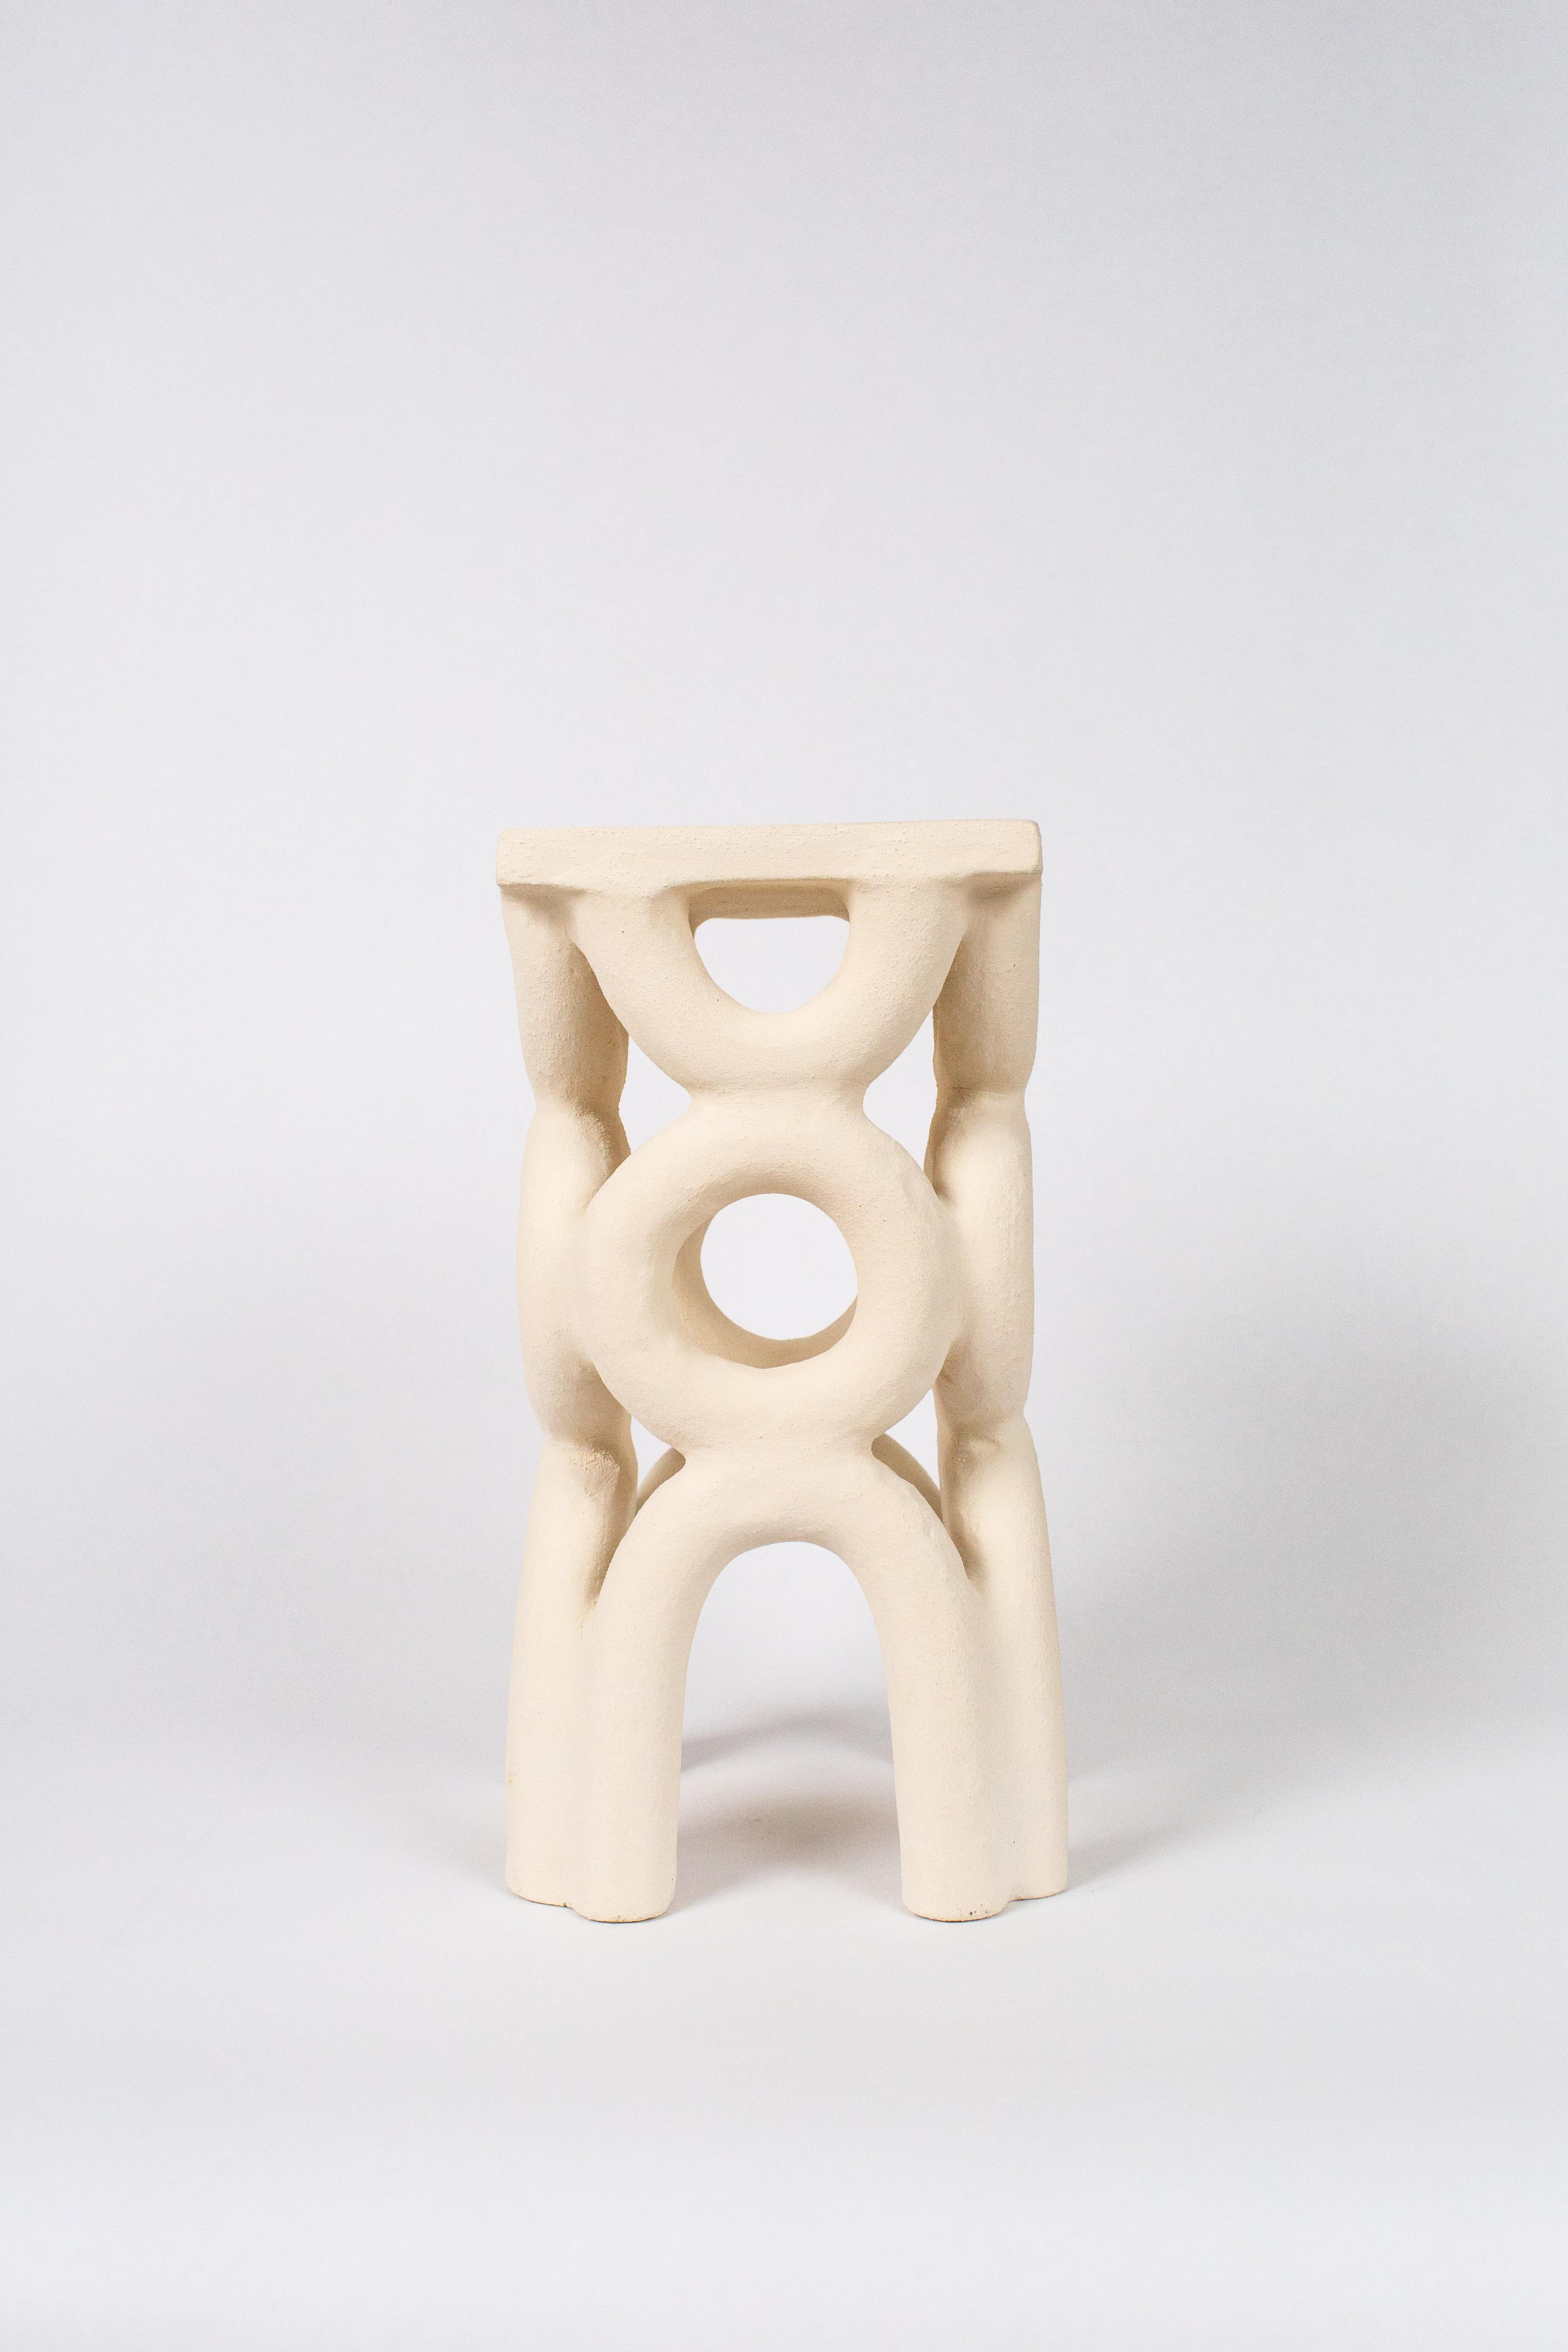 Unique arch square white stool by Mesut Öztürk.
Dimensions:  W 19 x D 19 x  H 40 cm.
Materials: stoneware.

